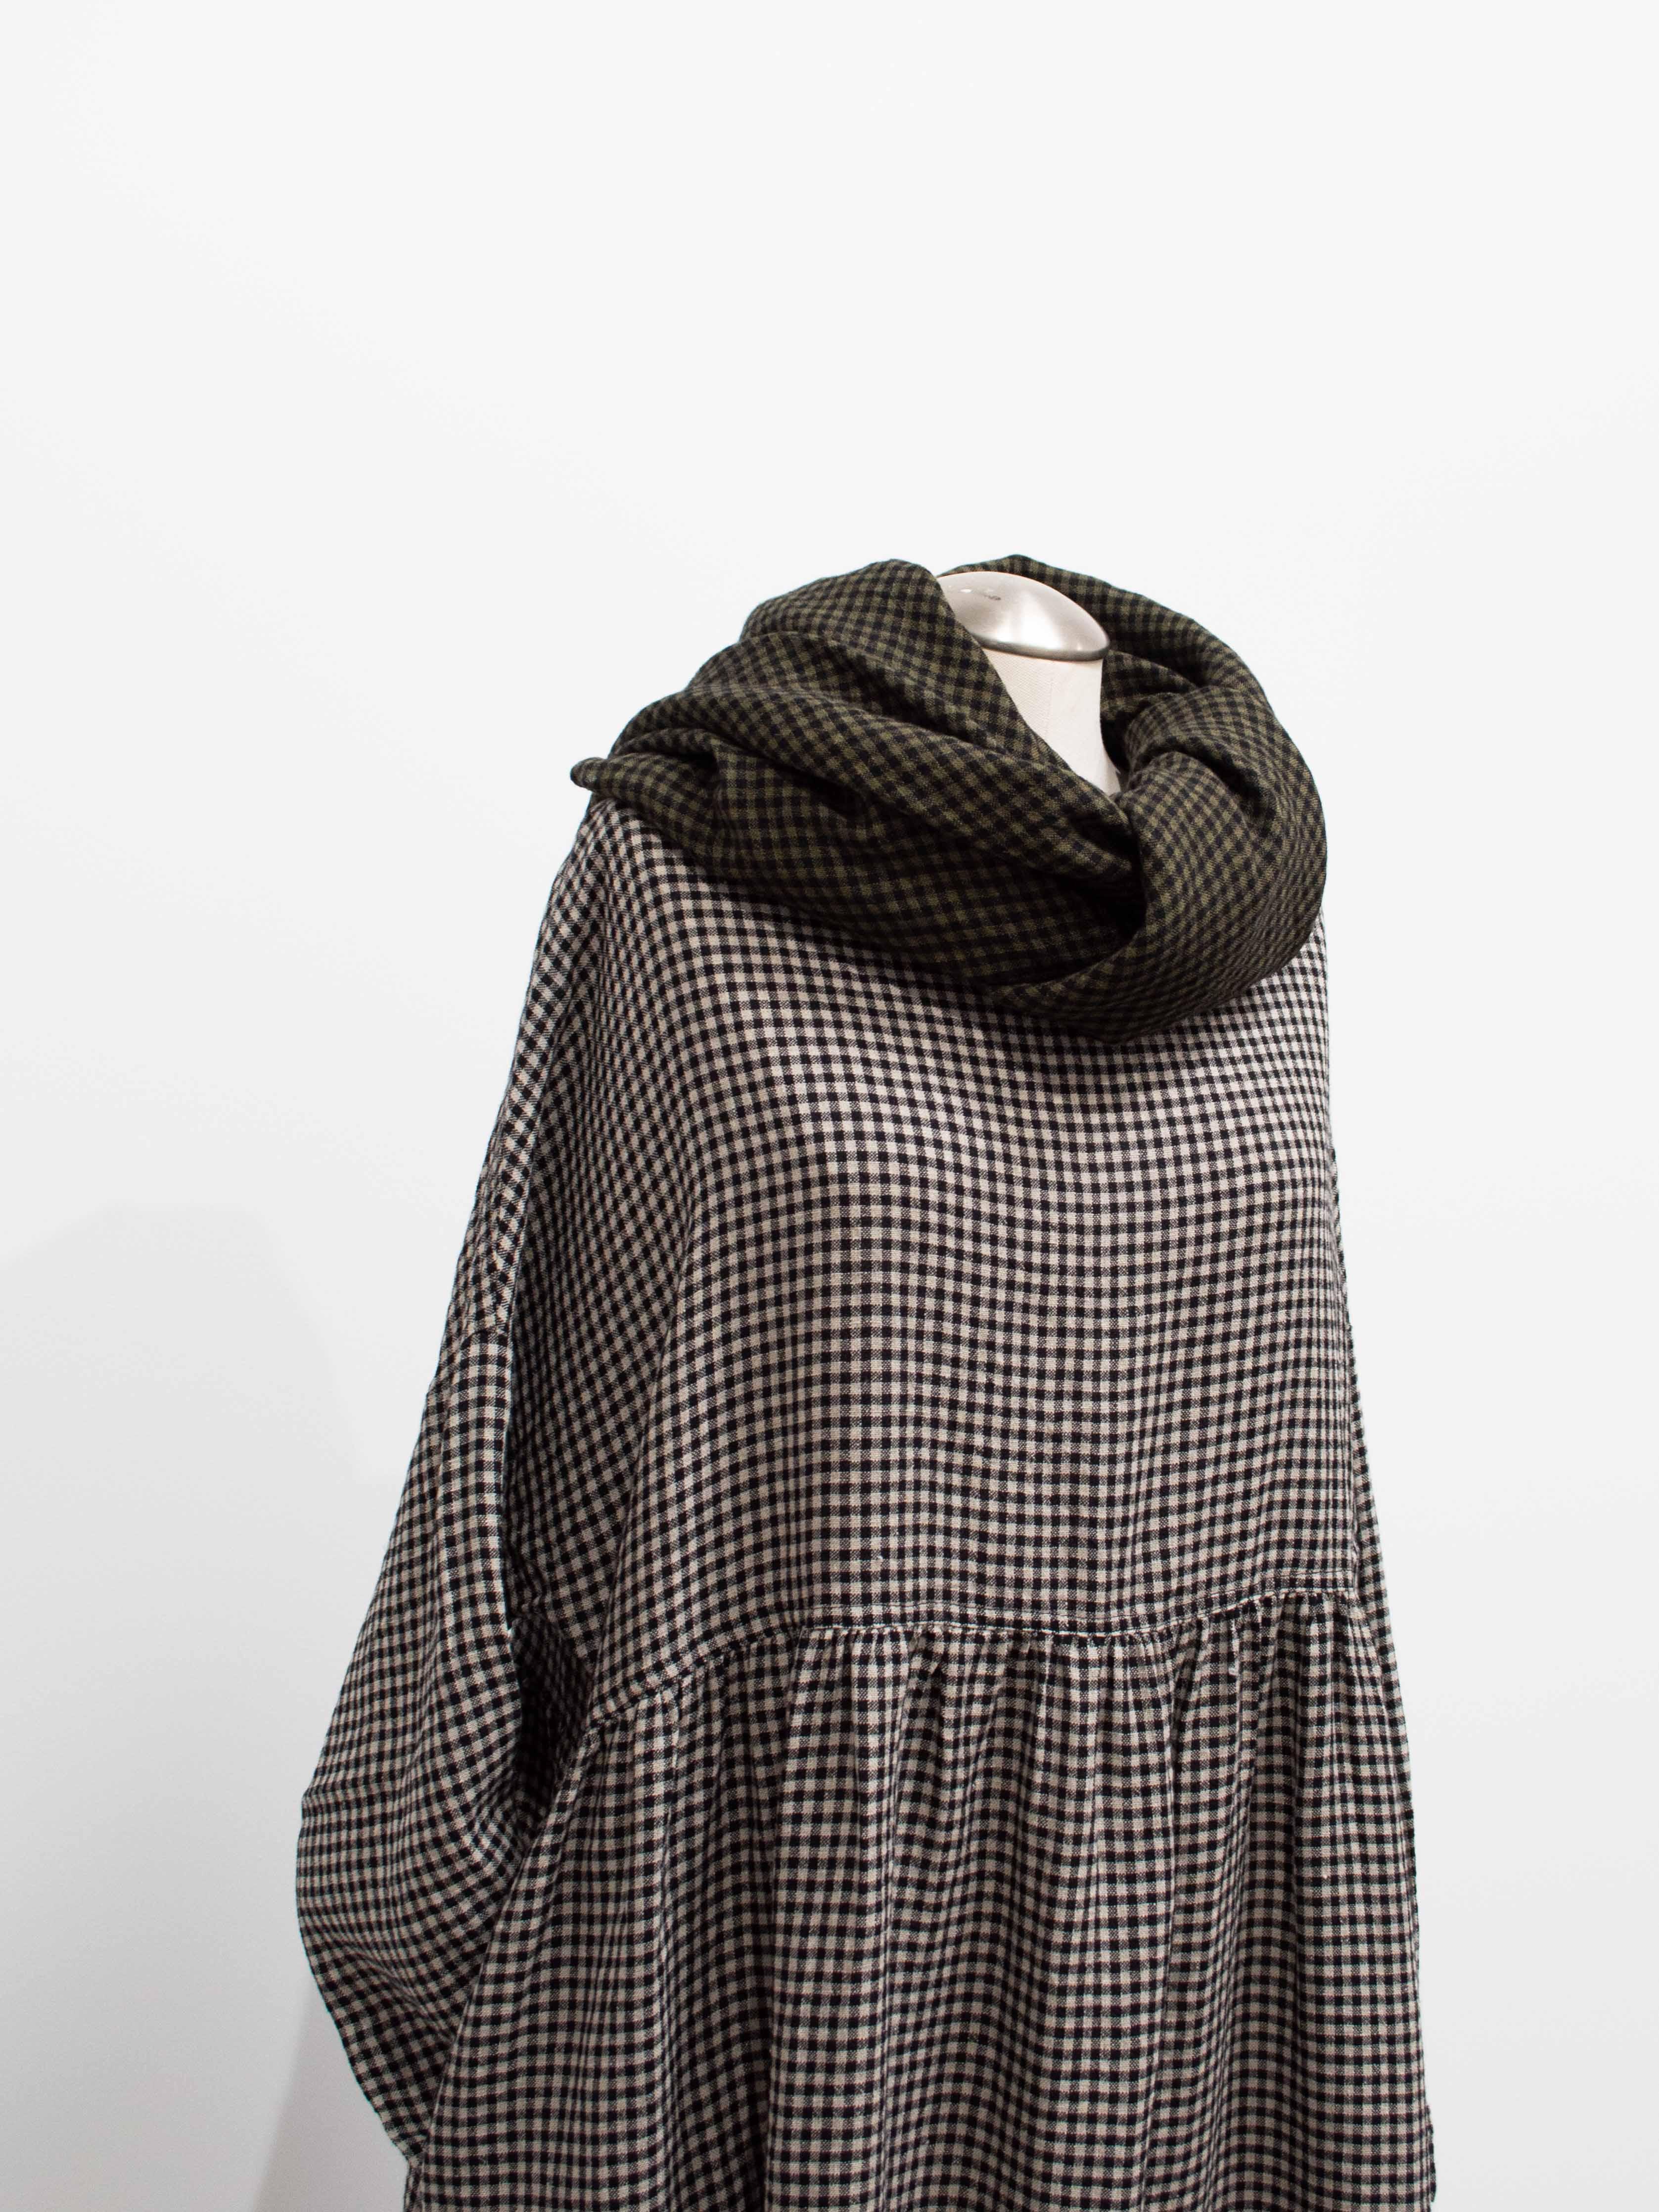 Namu Shop - Ichi Antiquites Wool Linen Gingham Stole - Olive x Black